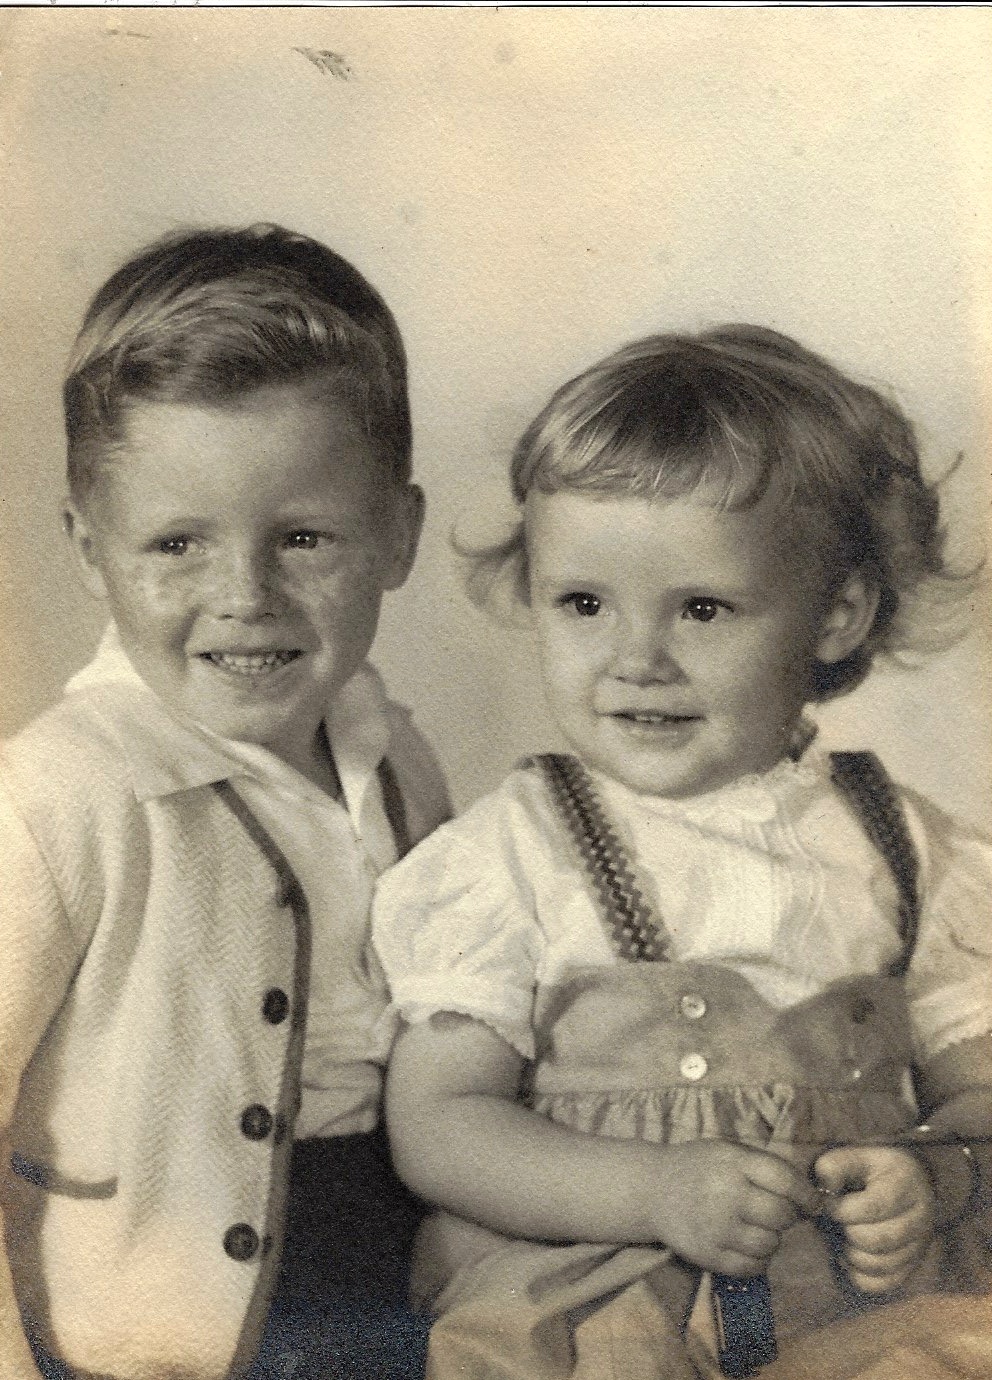 Kenny and Karen, circa 1949